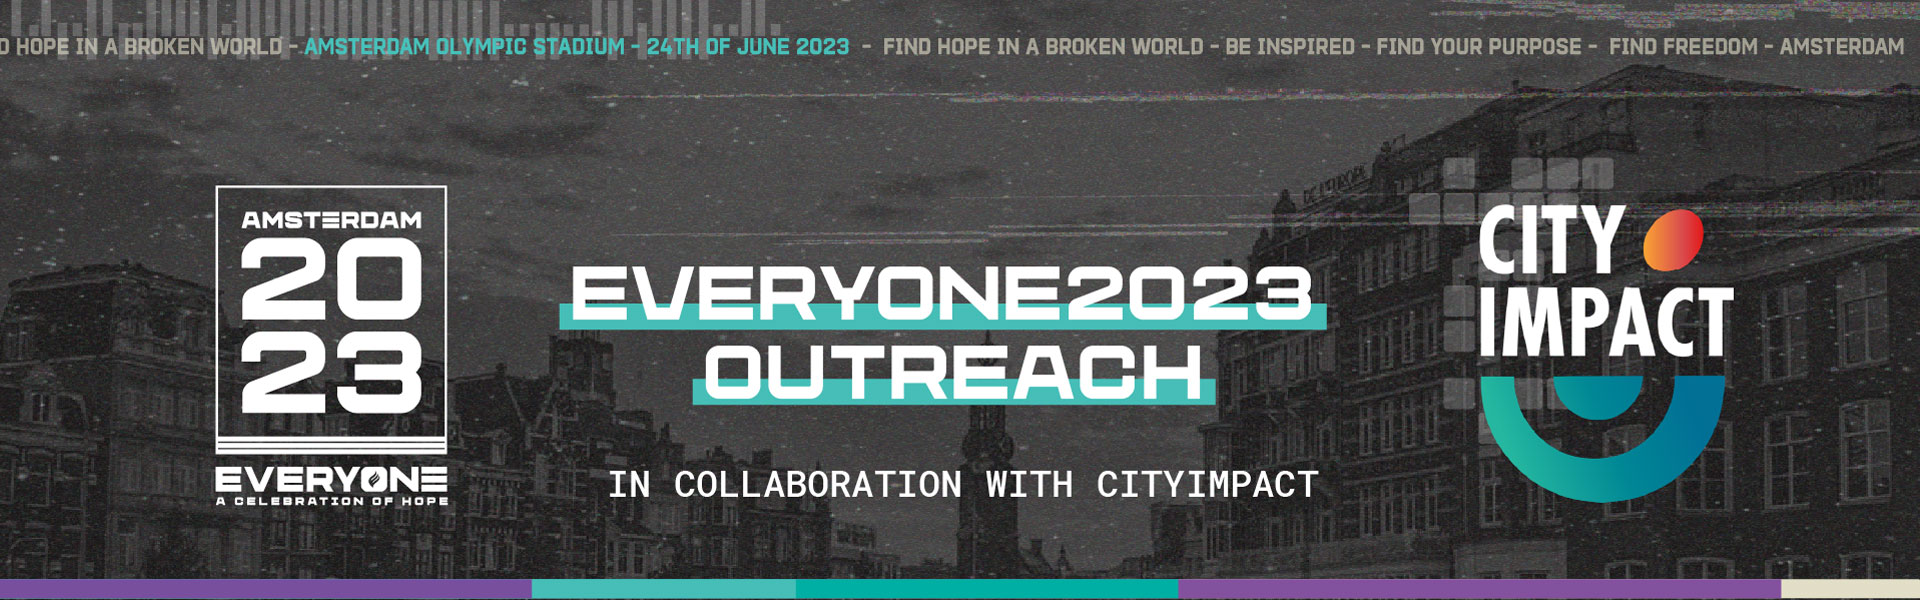 everone2023-cityimpact-outreach-1